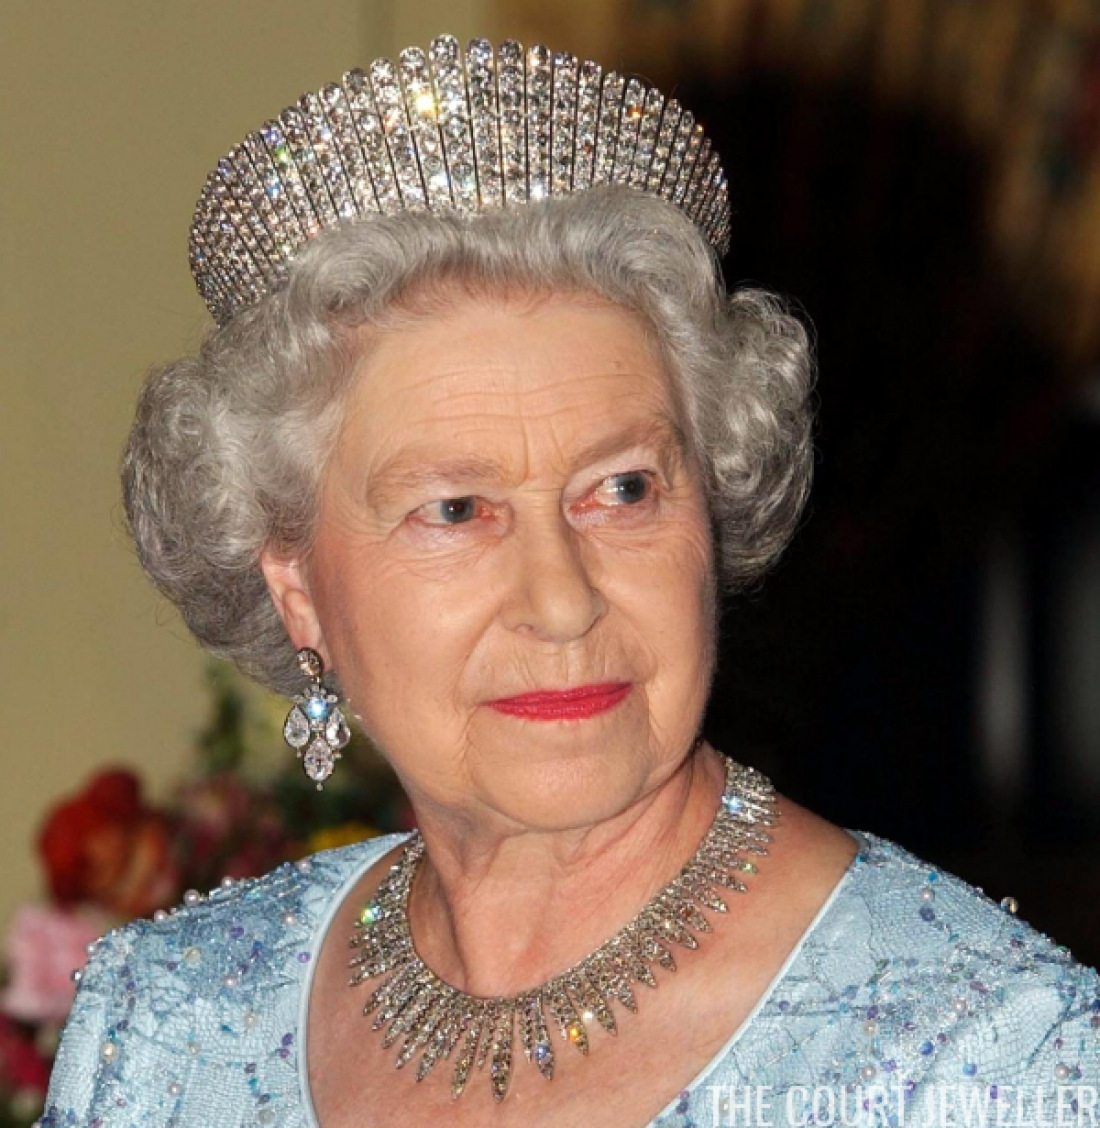 Kraljica tiare v ruskem stilu kokošnika ne nosi rada, ker je zelo težka. Foto: AFP